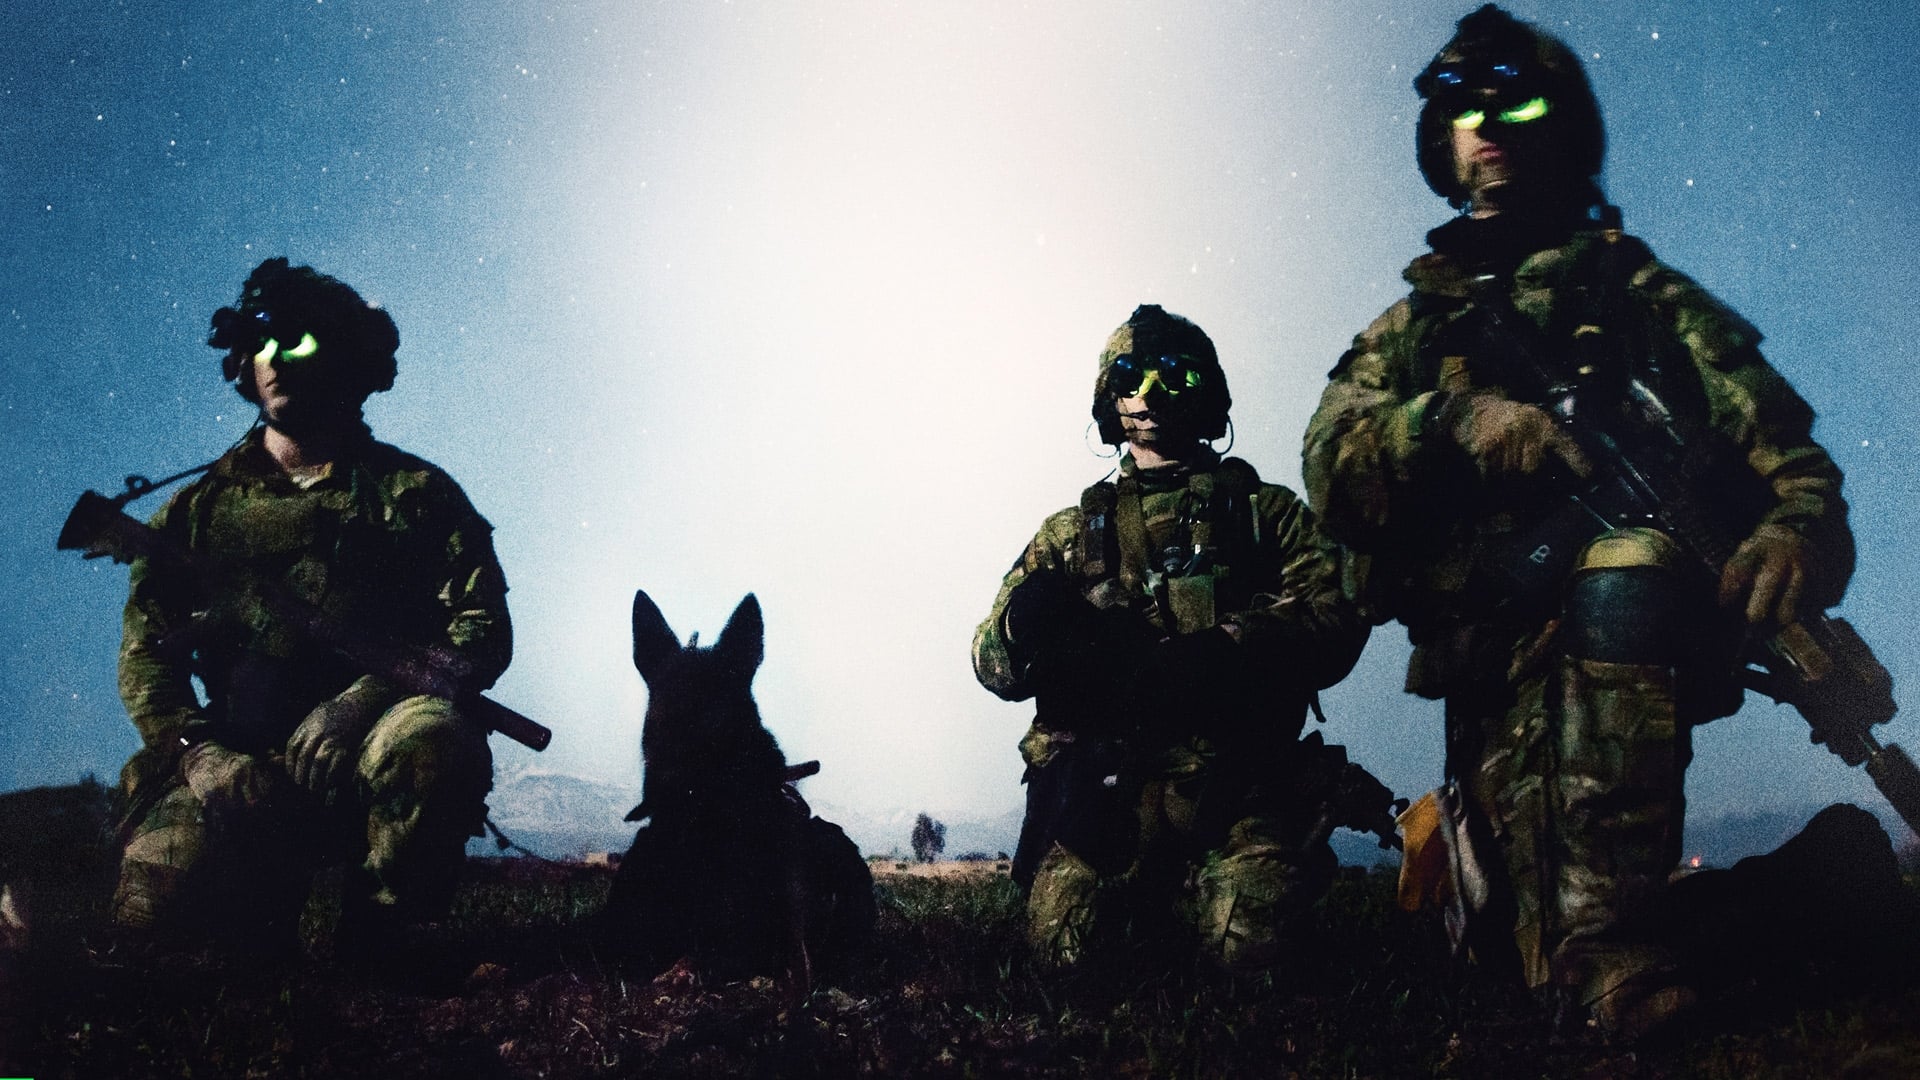 War Dog: A Soldier’s Best Friend